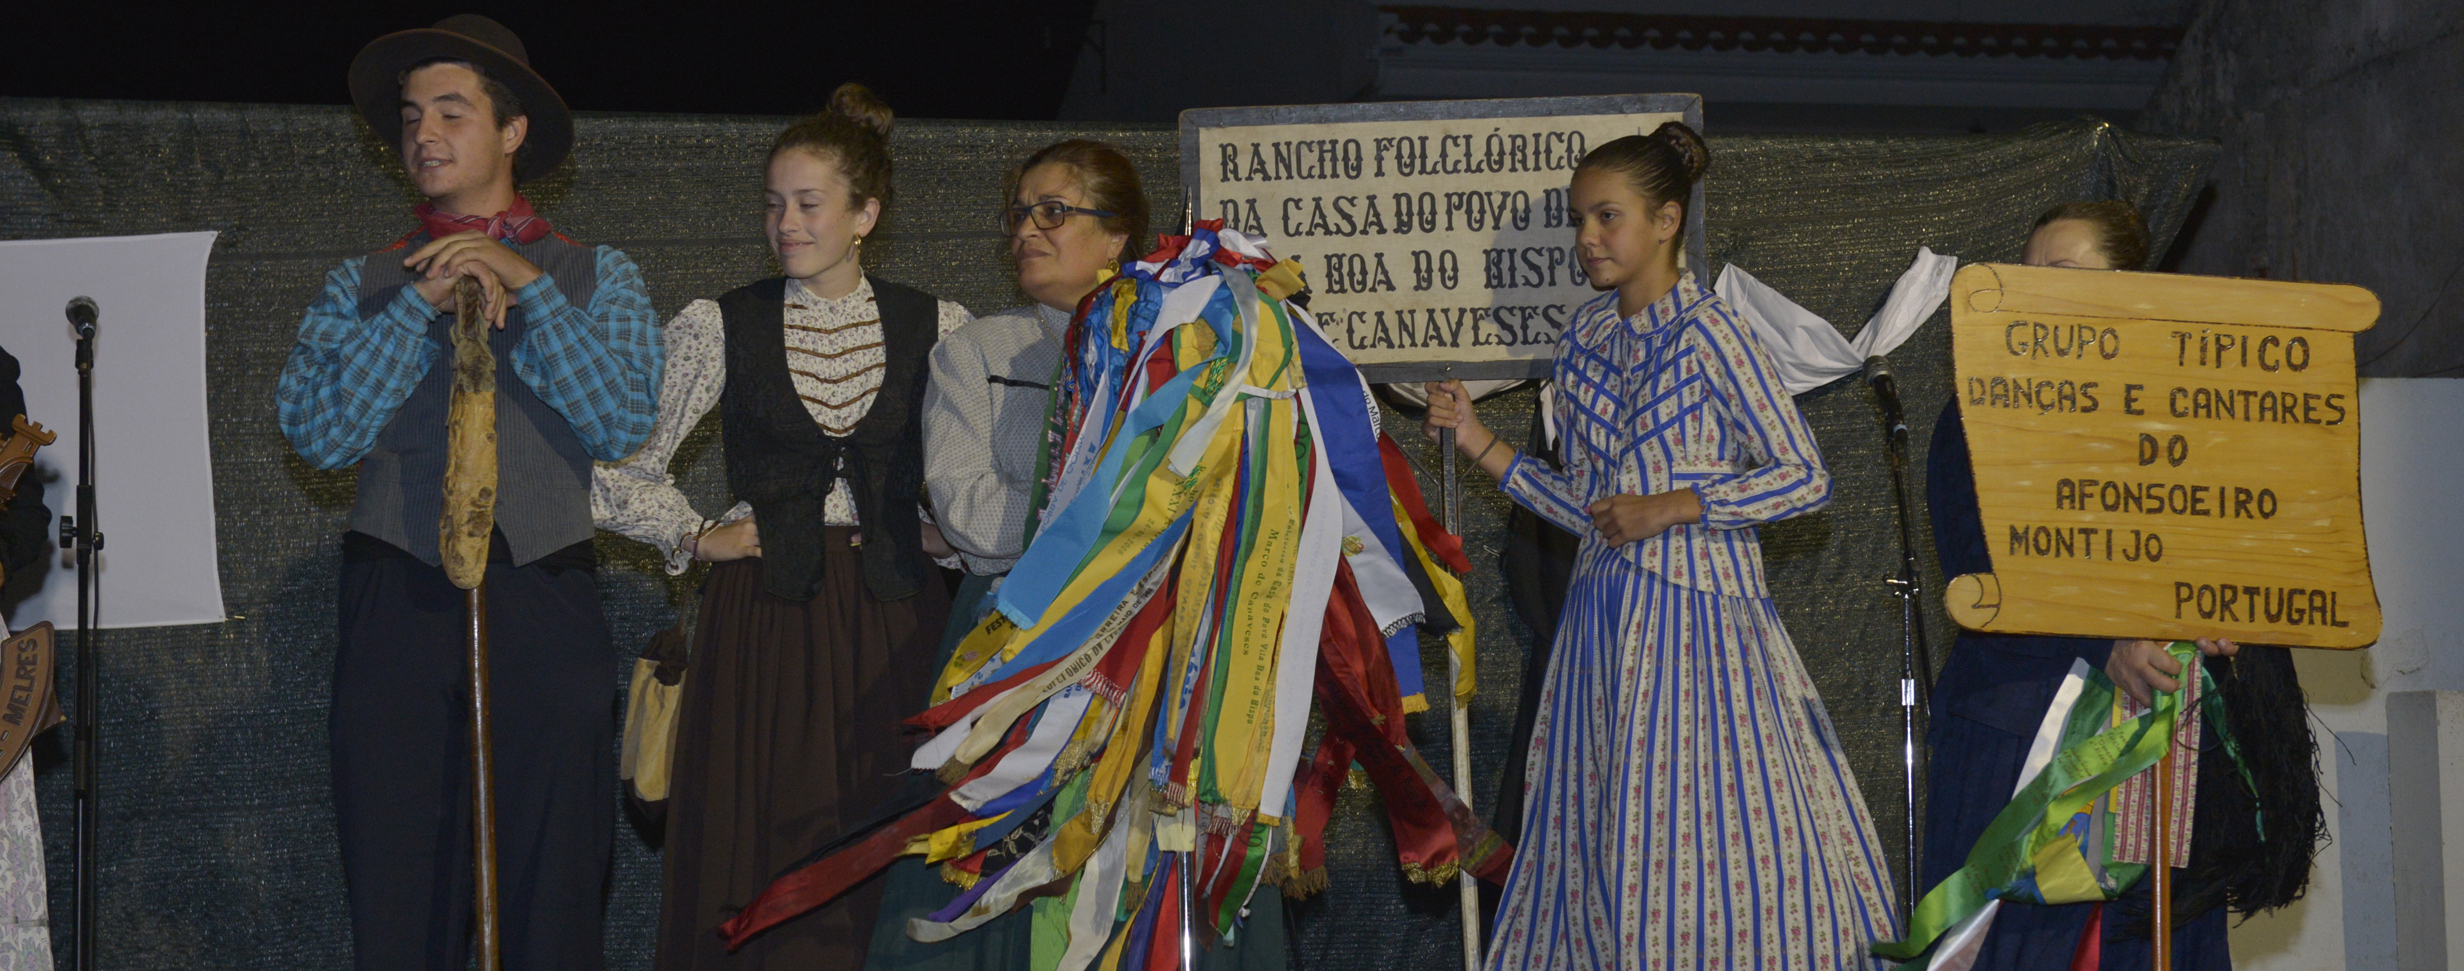 Festival de Folclore no Afonsoeiro